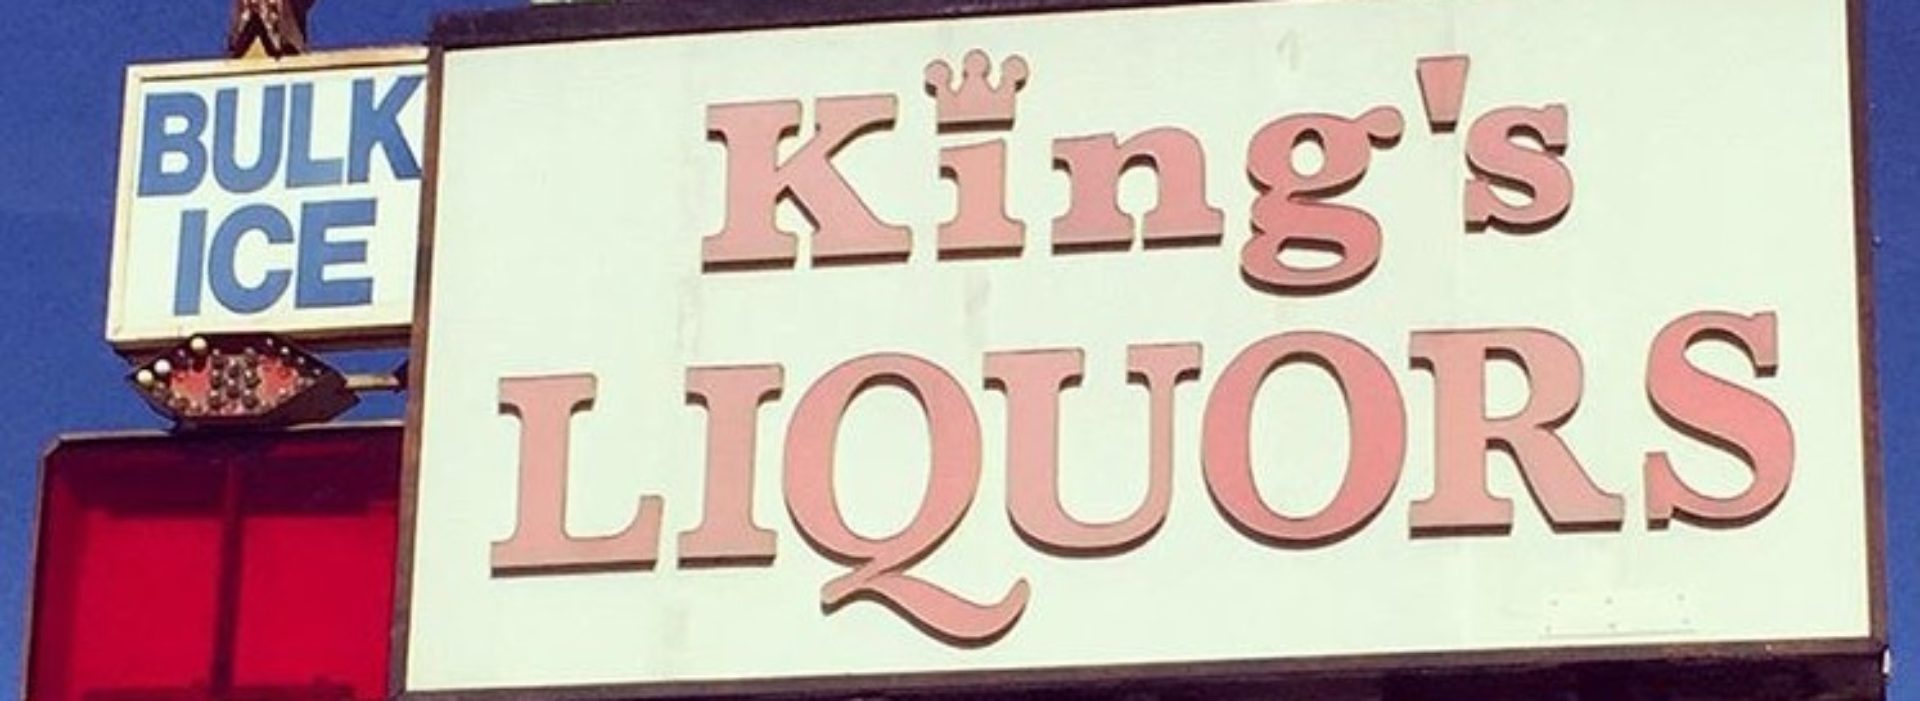 Kings Liquor Santa Monica